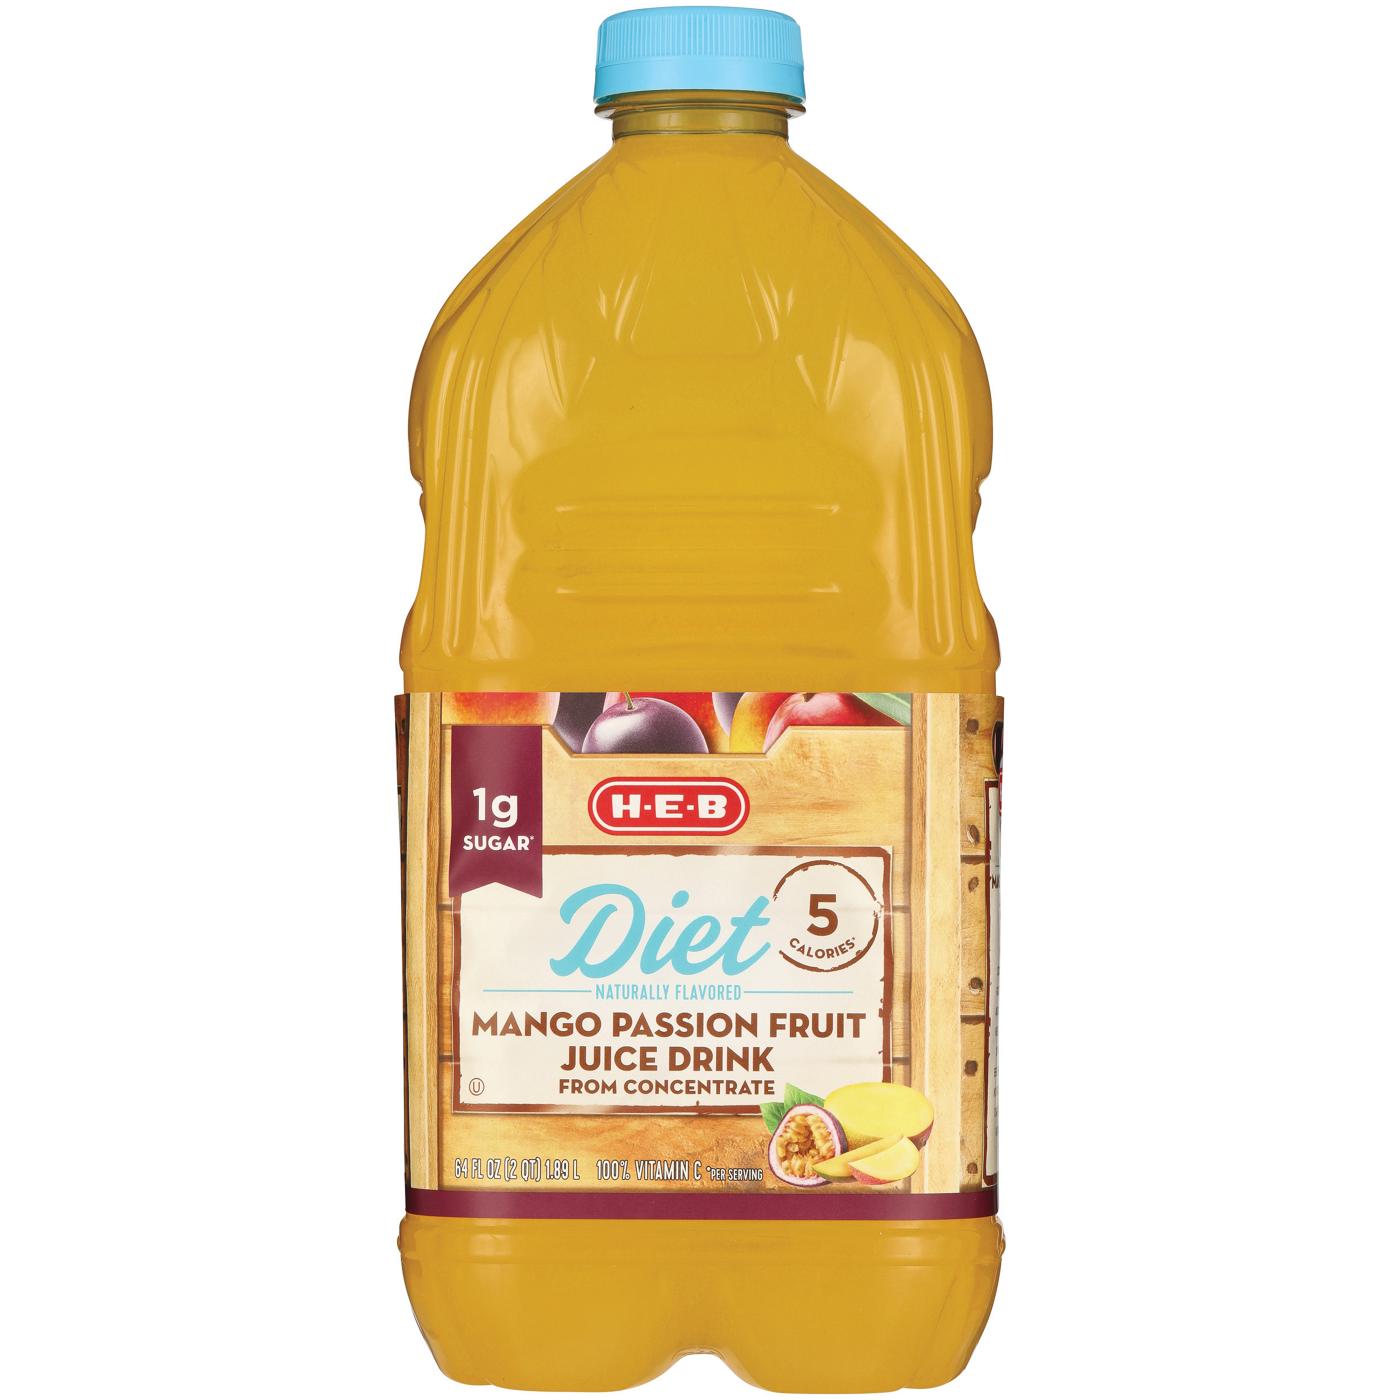 H-E-B Diet Mango Passion Fruit Juice; image 1 of 2